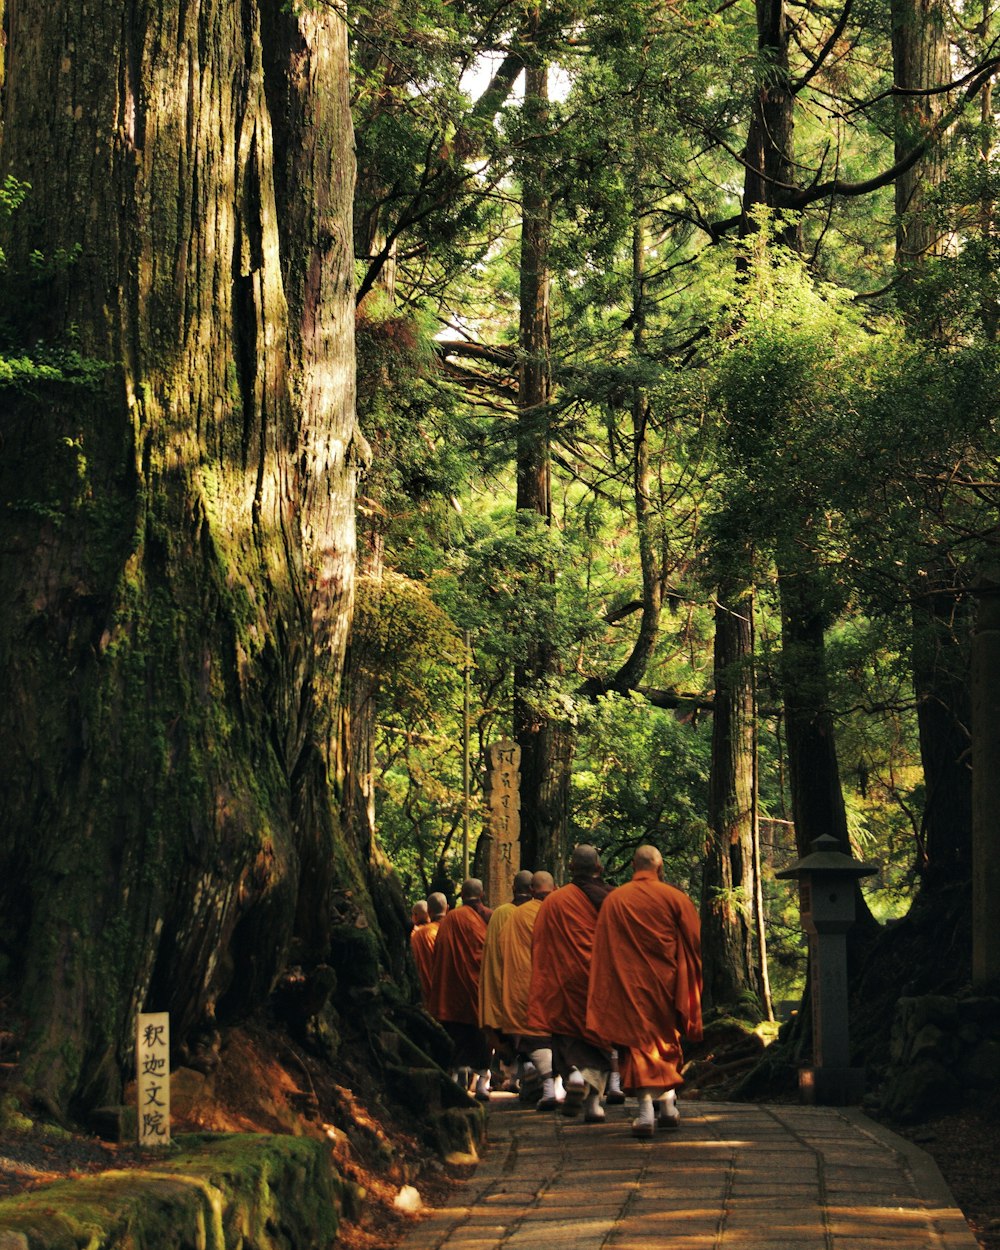 monges caminhando no caminho cercado de árvores